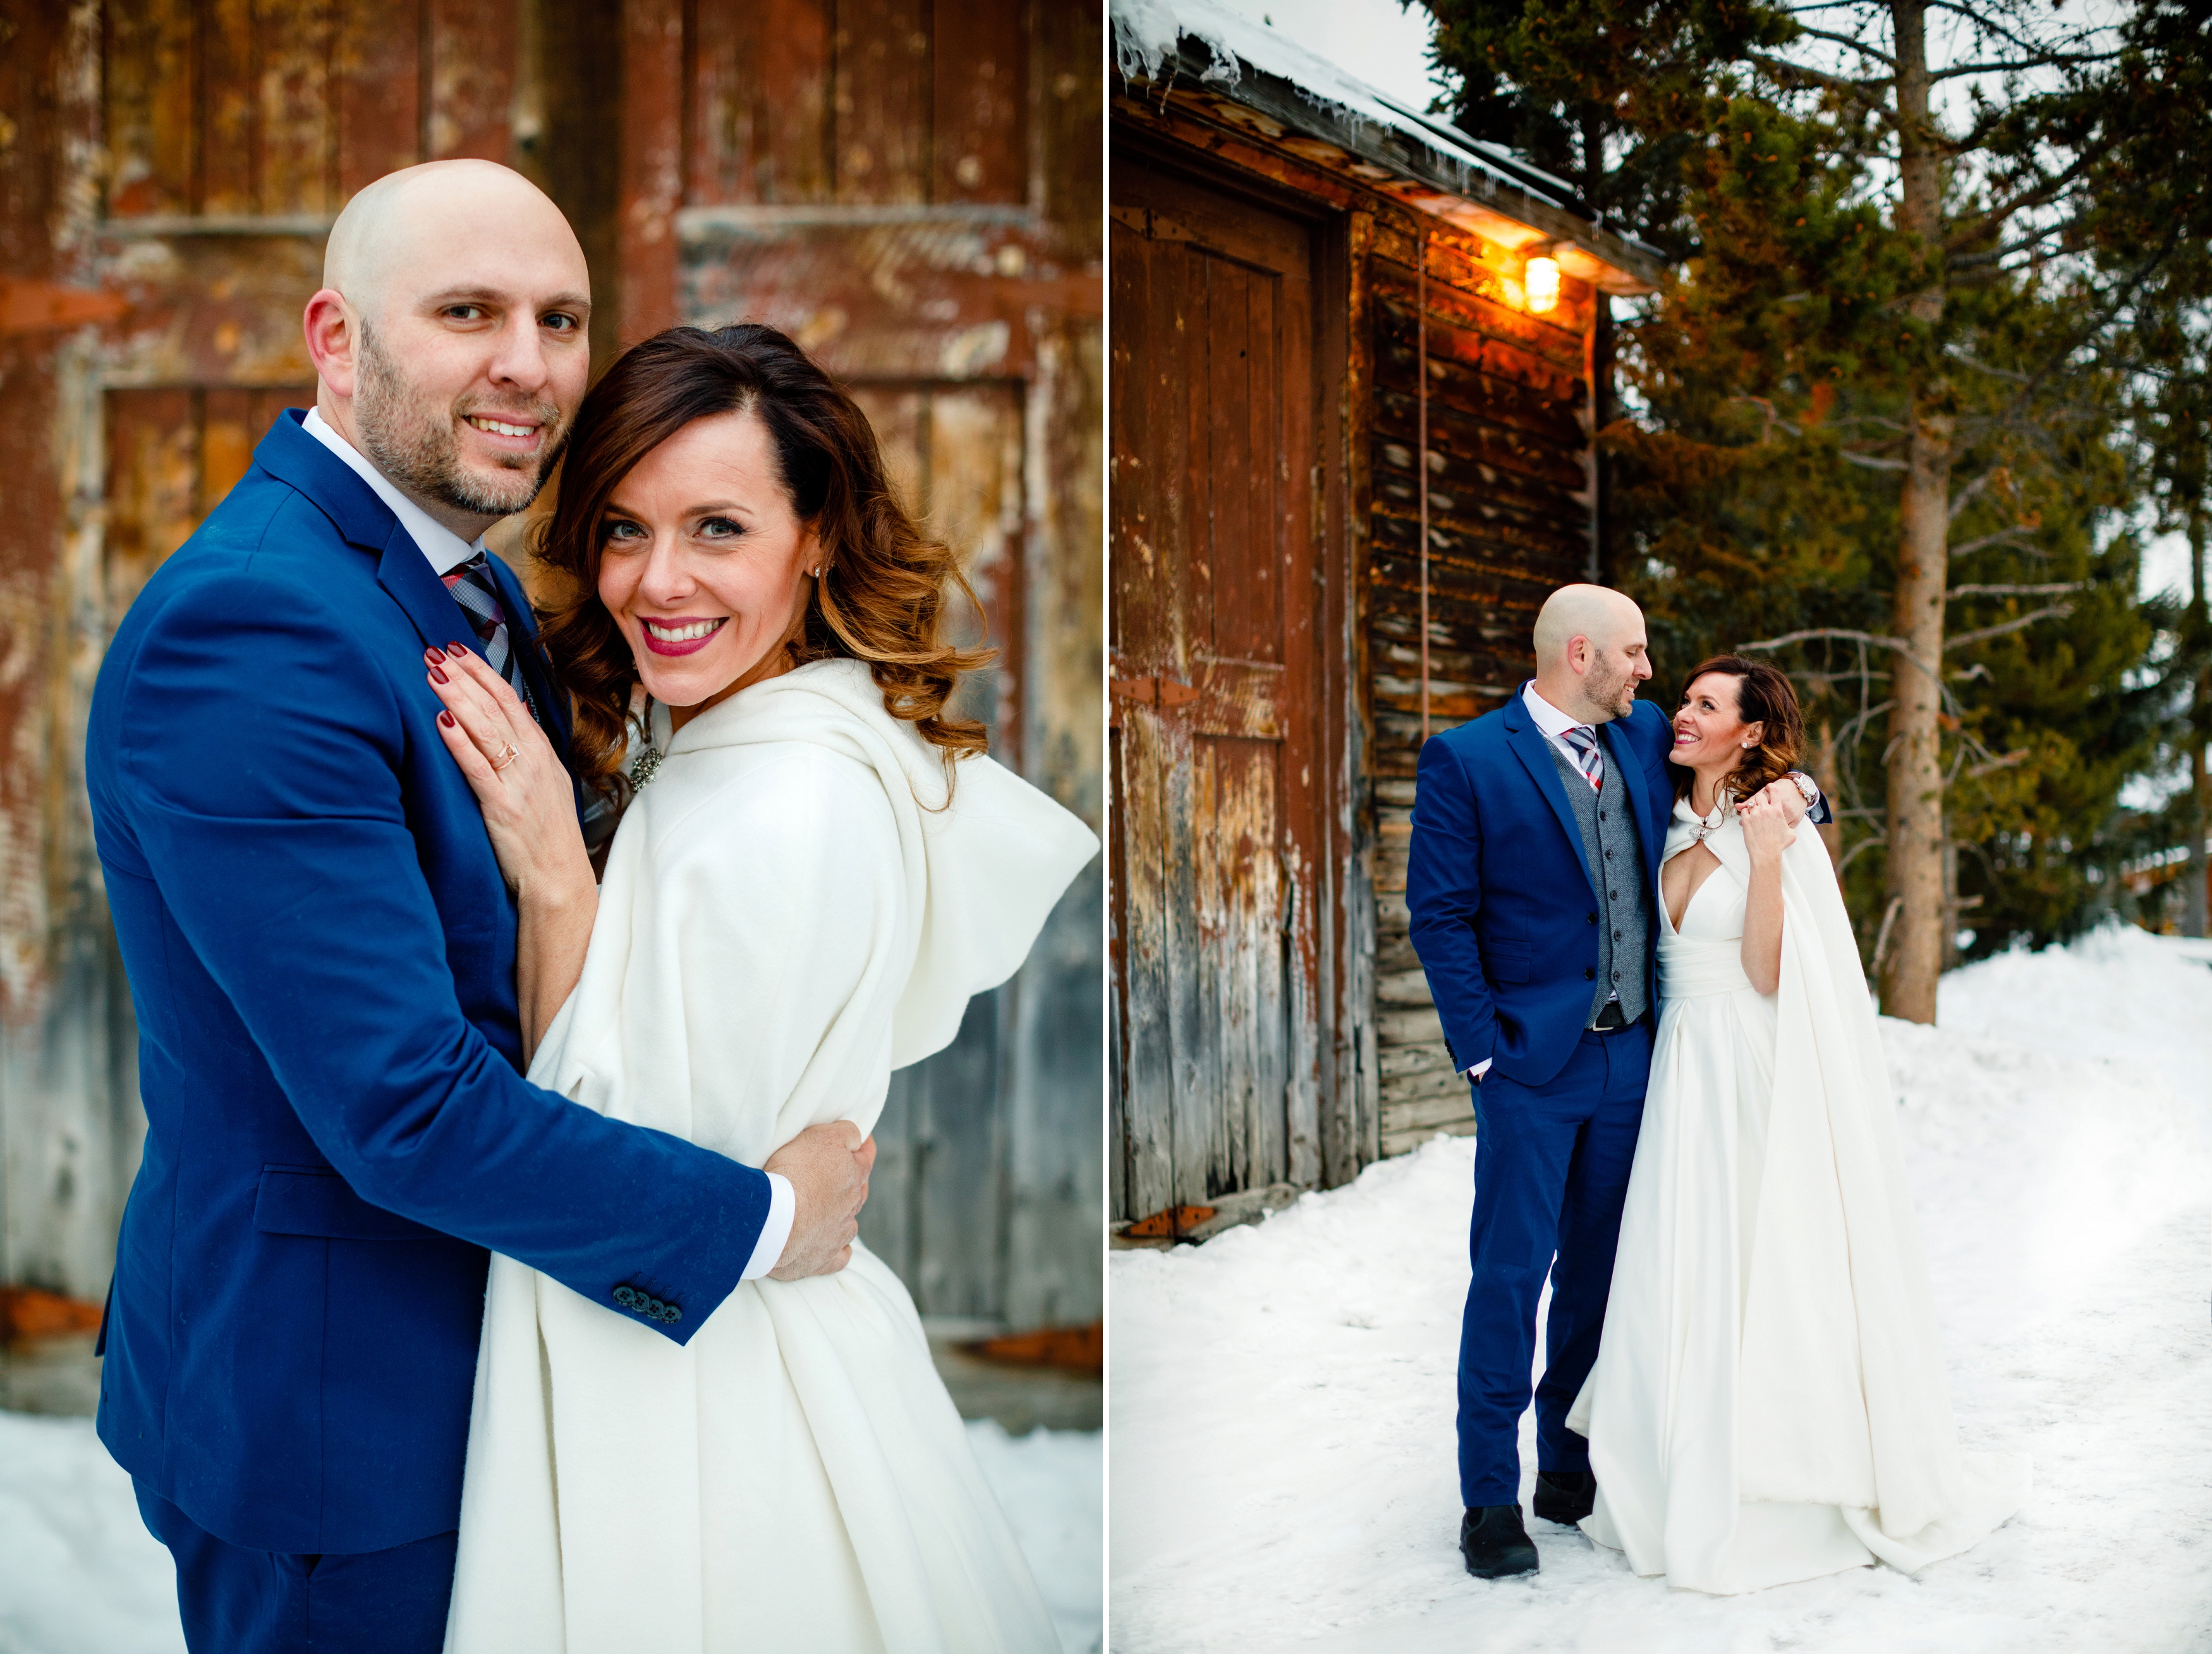 Scott & Rachel's winter wedding in Keystone, CO at the Keystone Ranch.